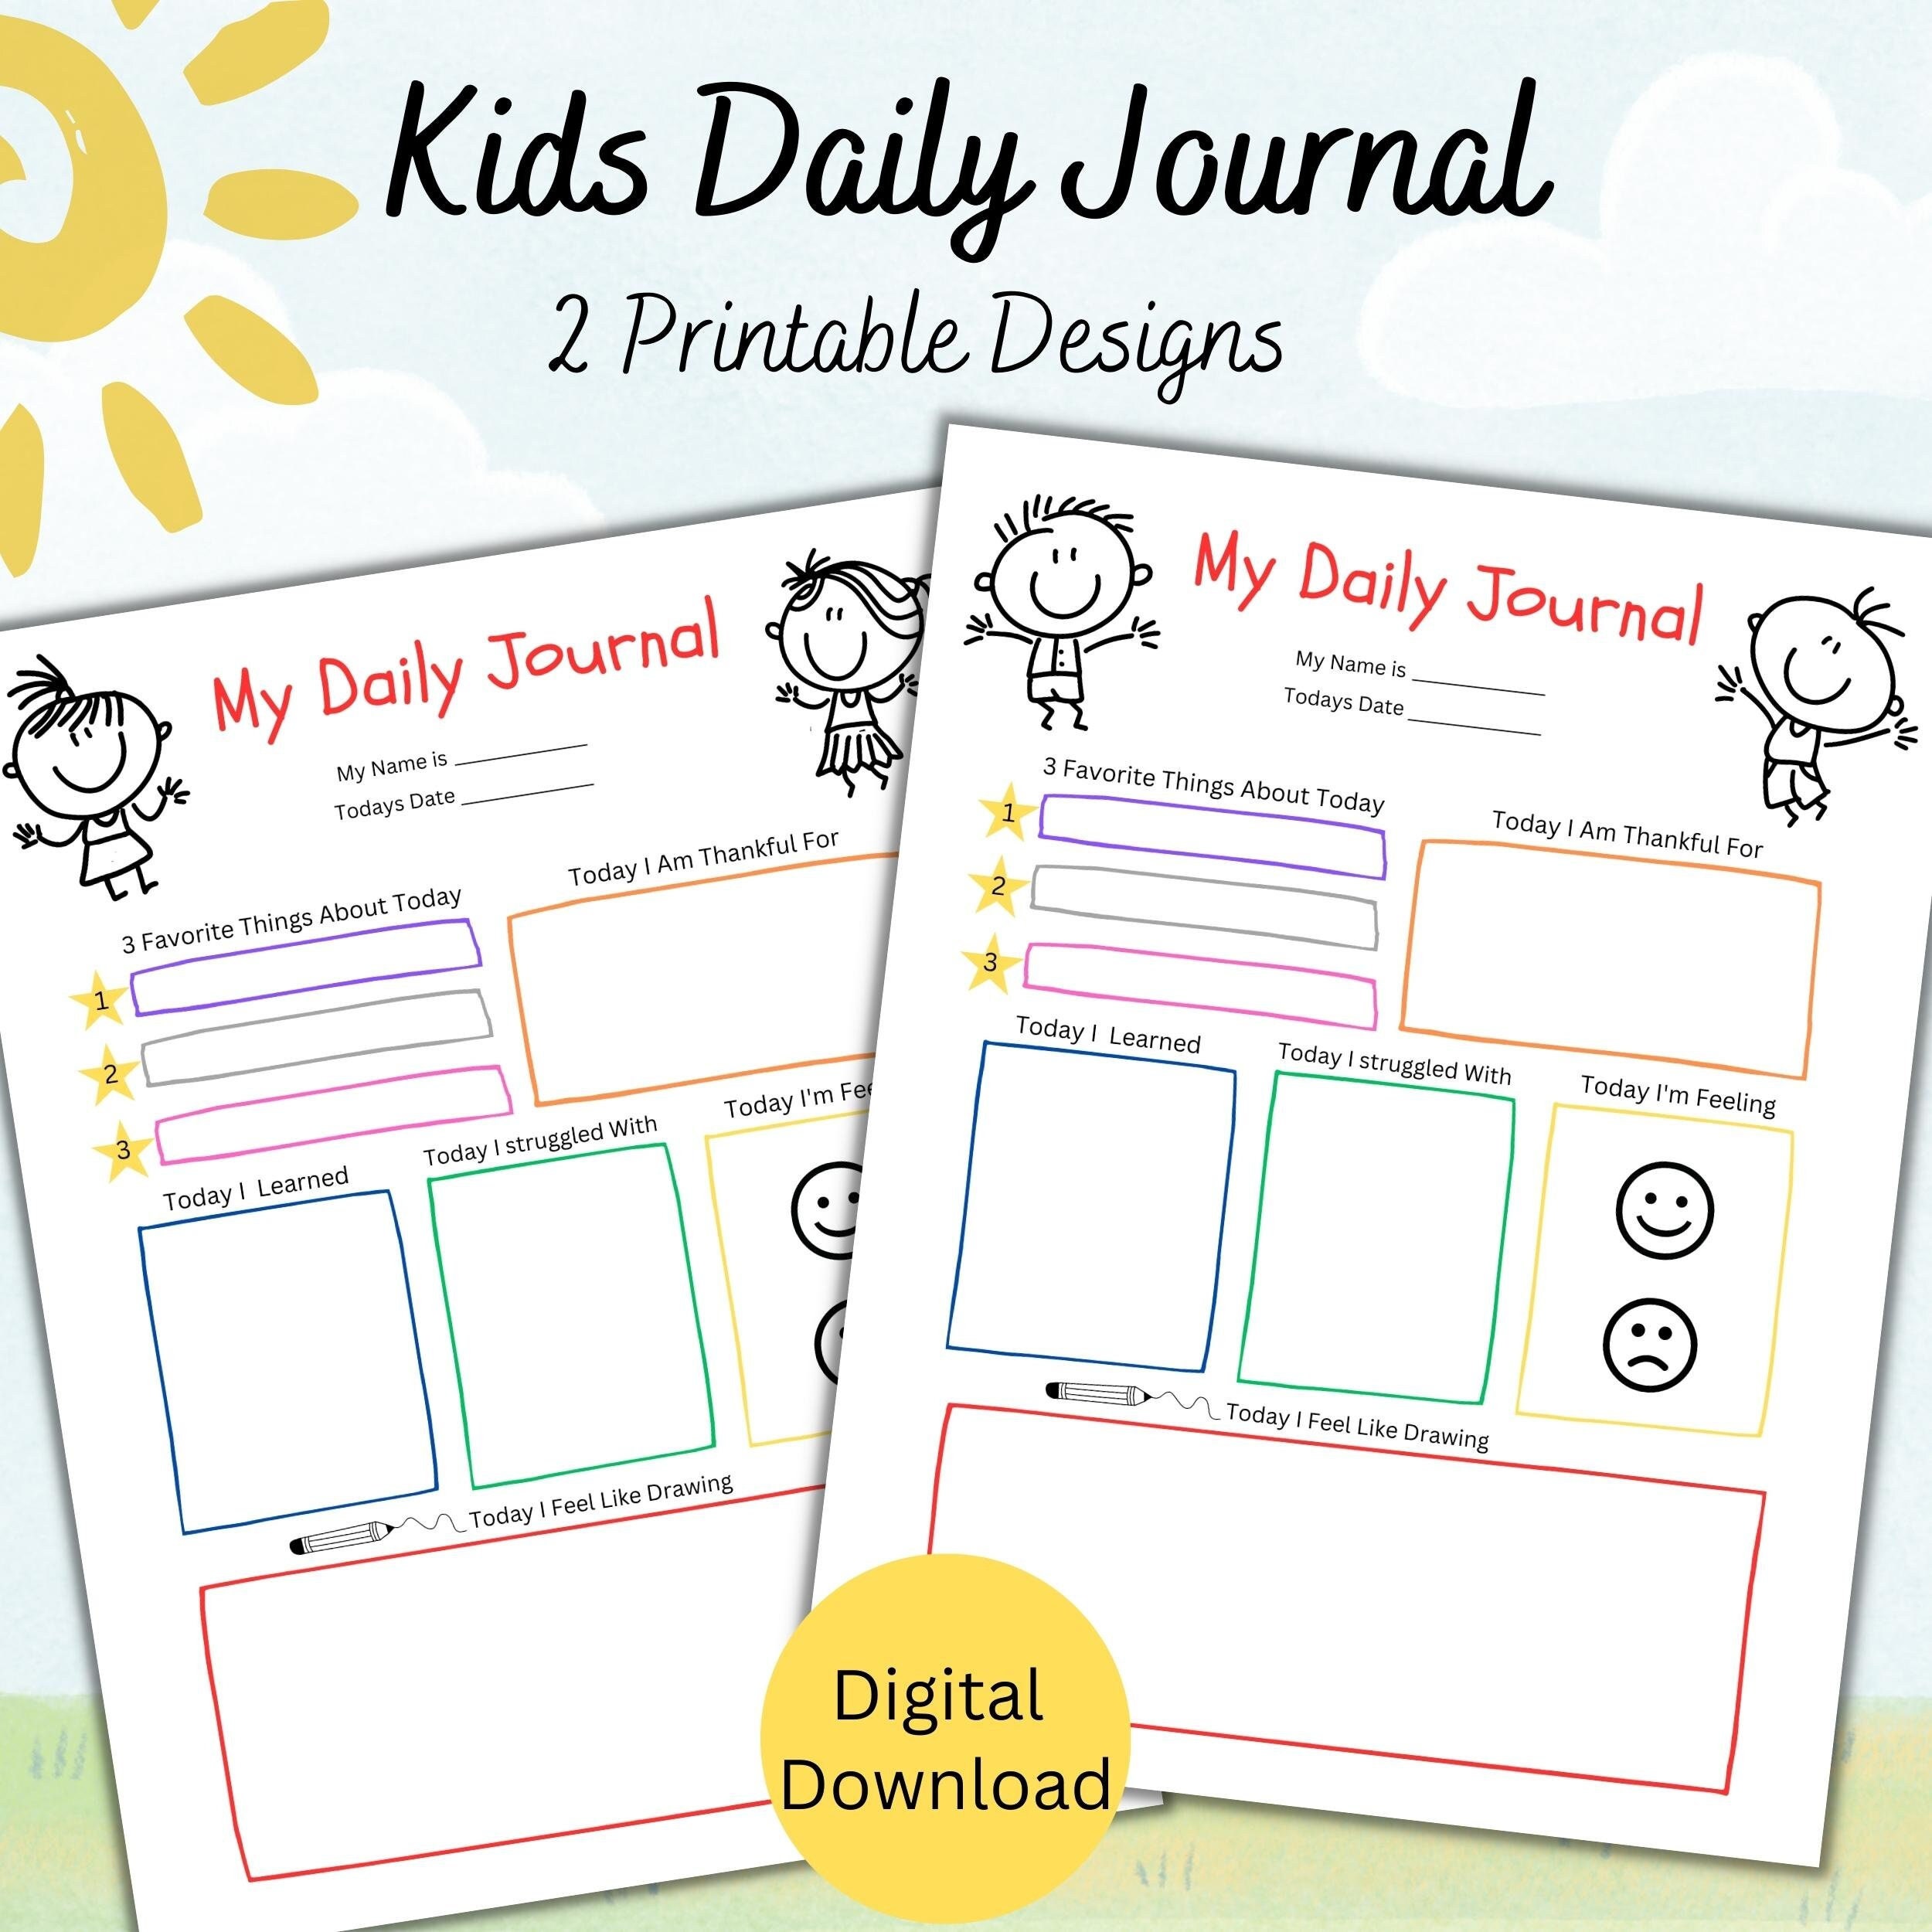 FREE Printable Journal for Kids